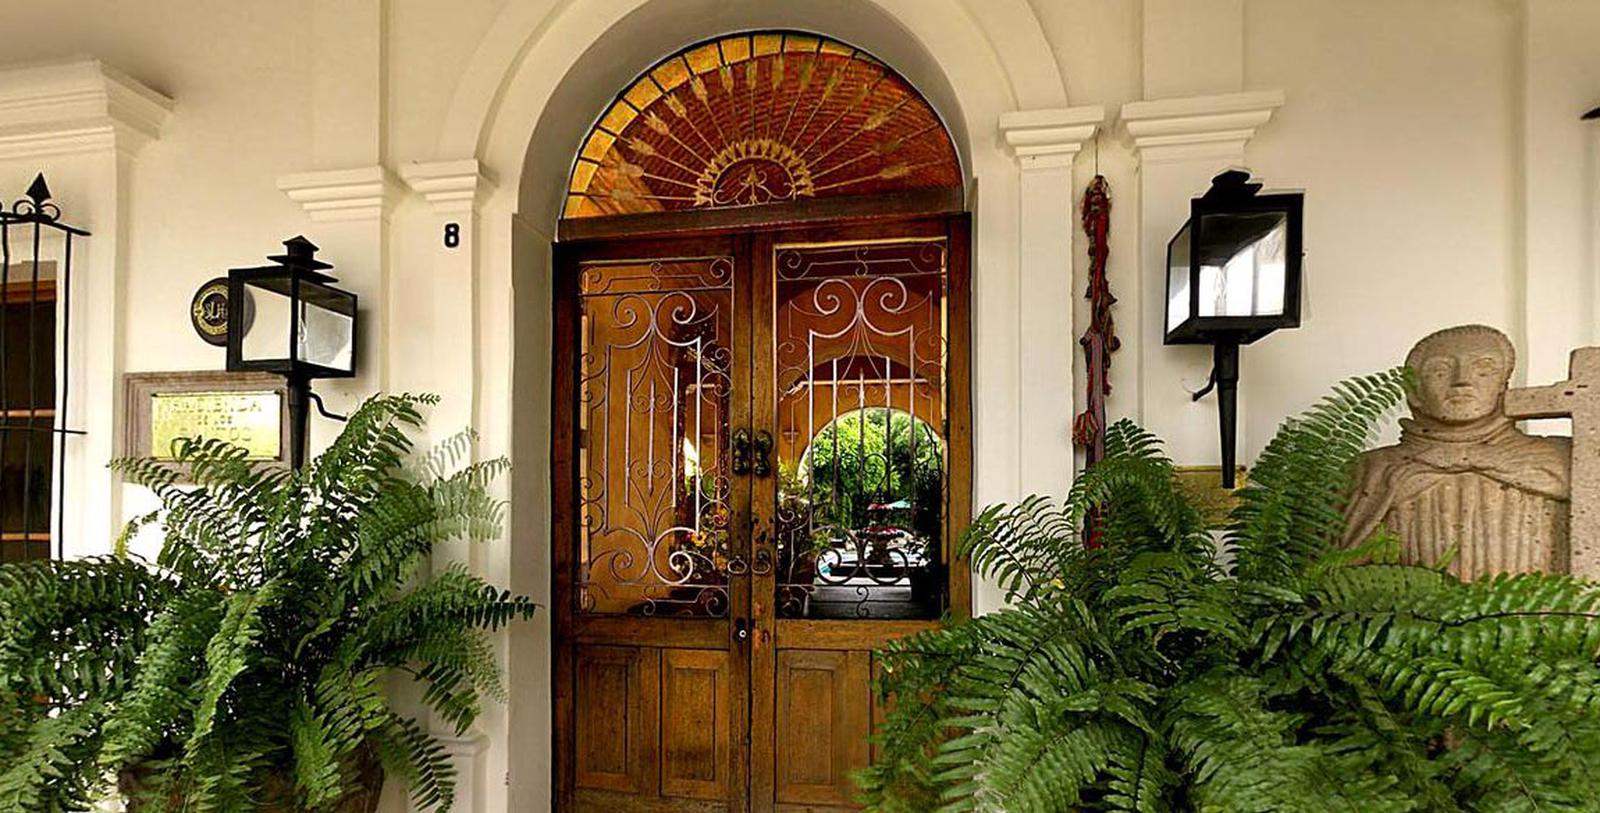 Image of Main Entrance Exterior, Hacienda de los Santos, Alamos, Mexico, 1600s, Member of Historic Hotels Worldwide, Spa